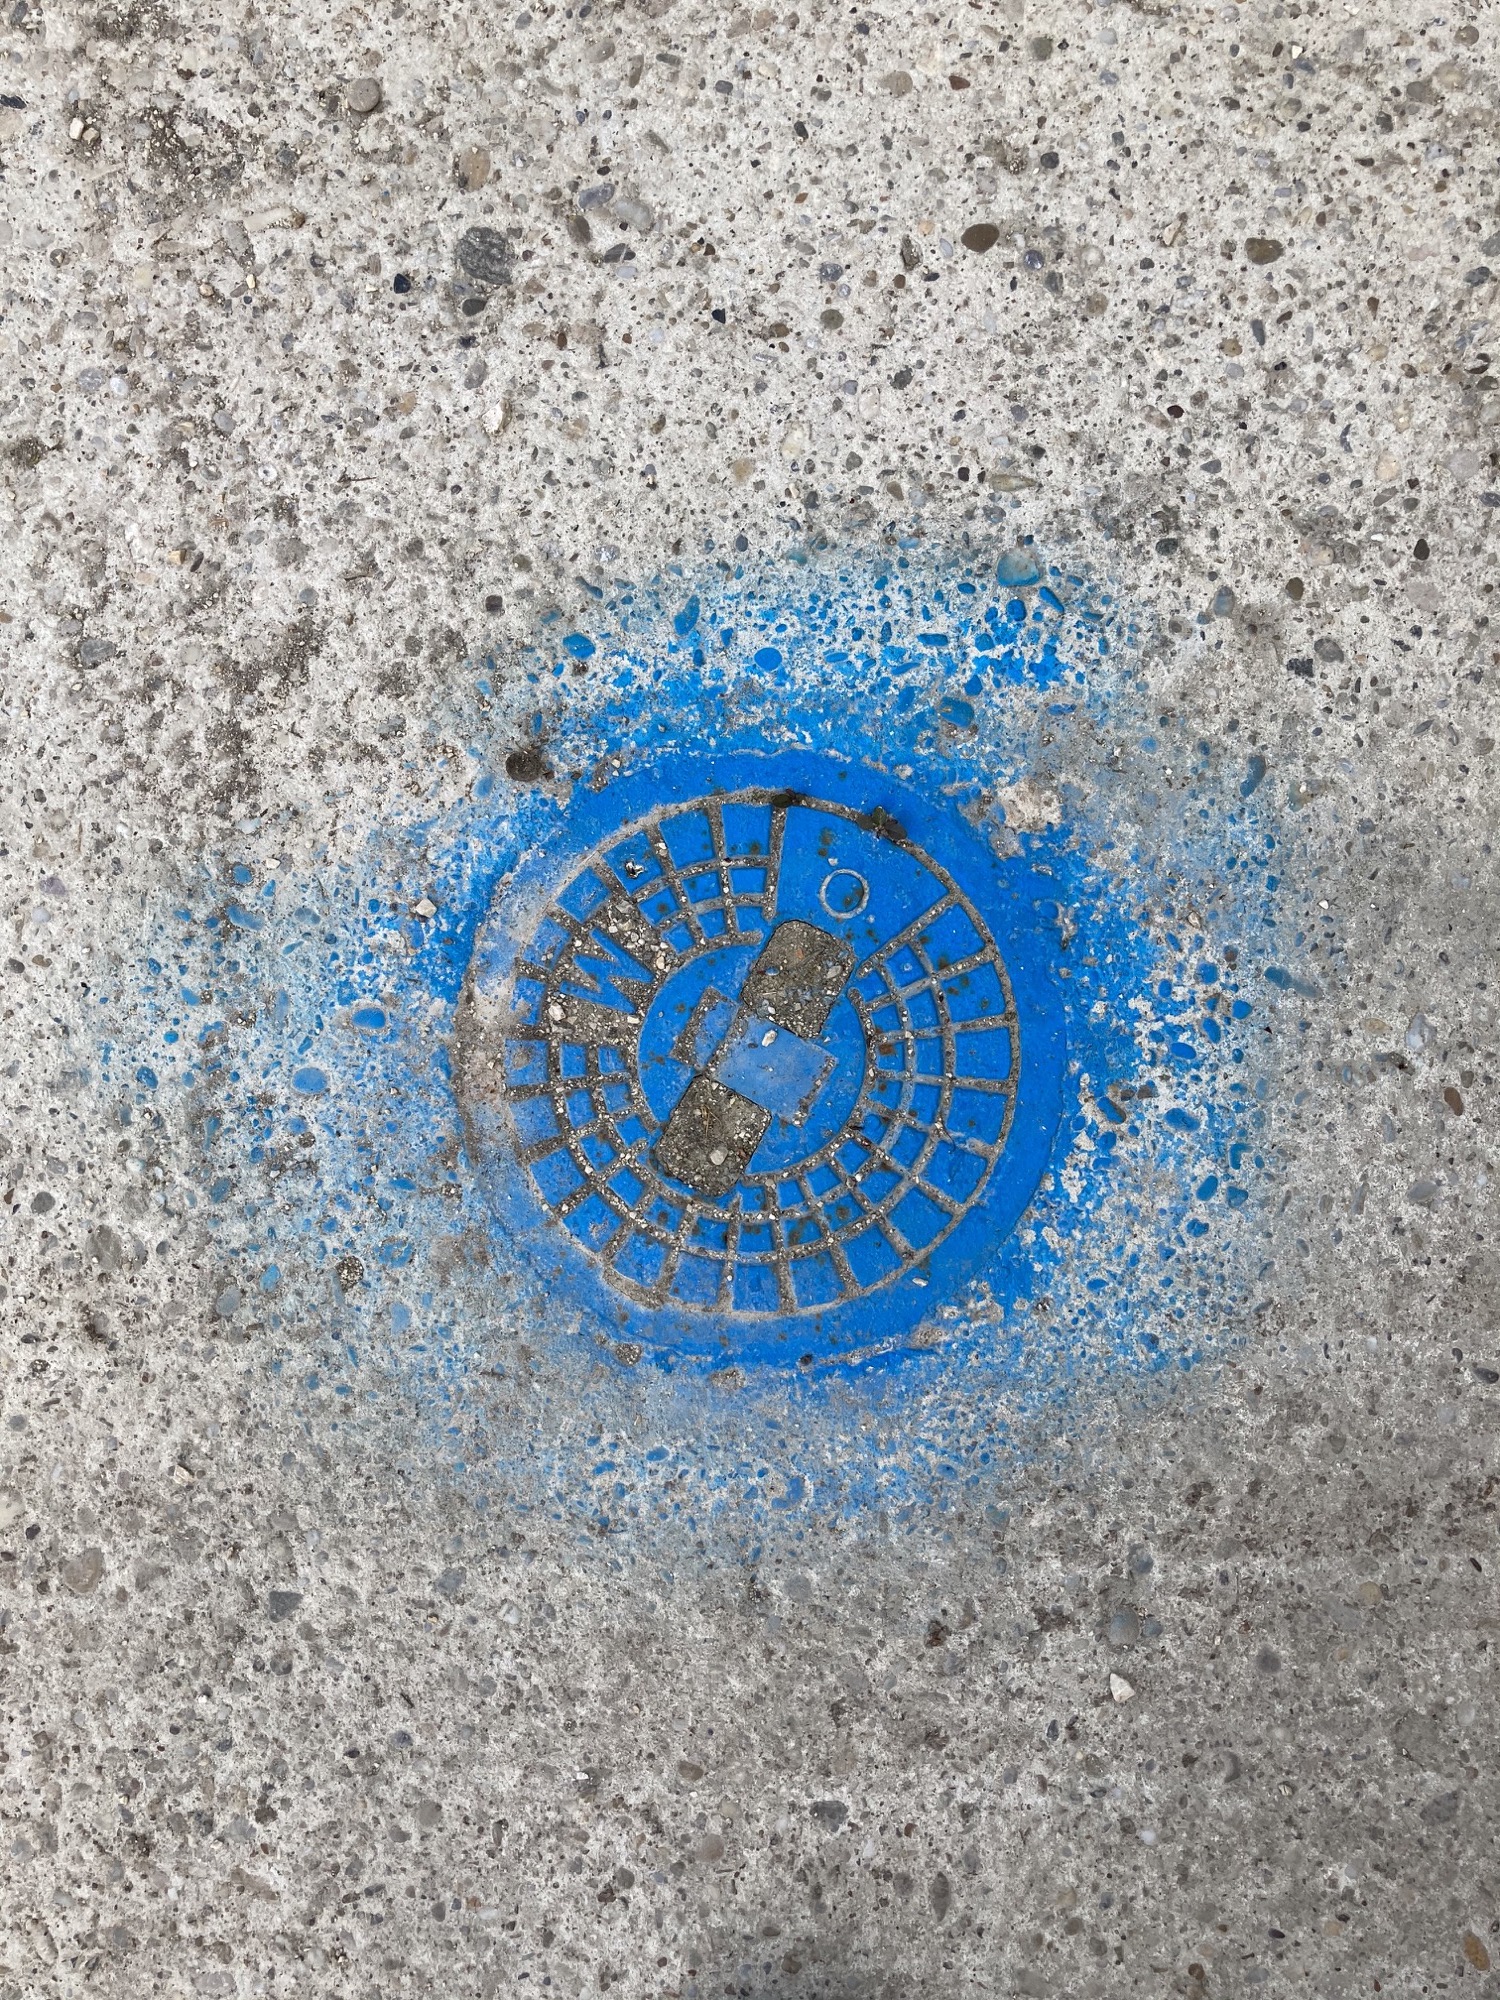 Wasserzugang im Boden, mit blauer Farbe gekennzeichnet